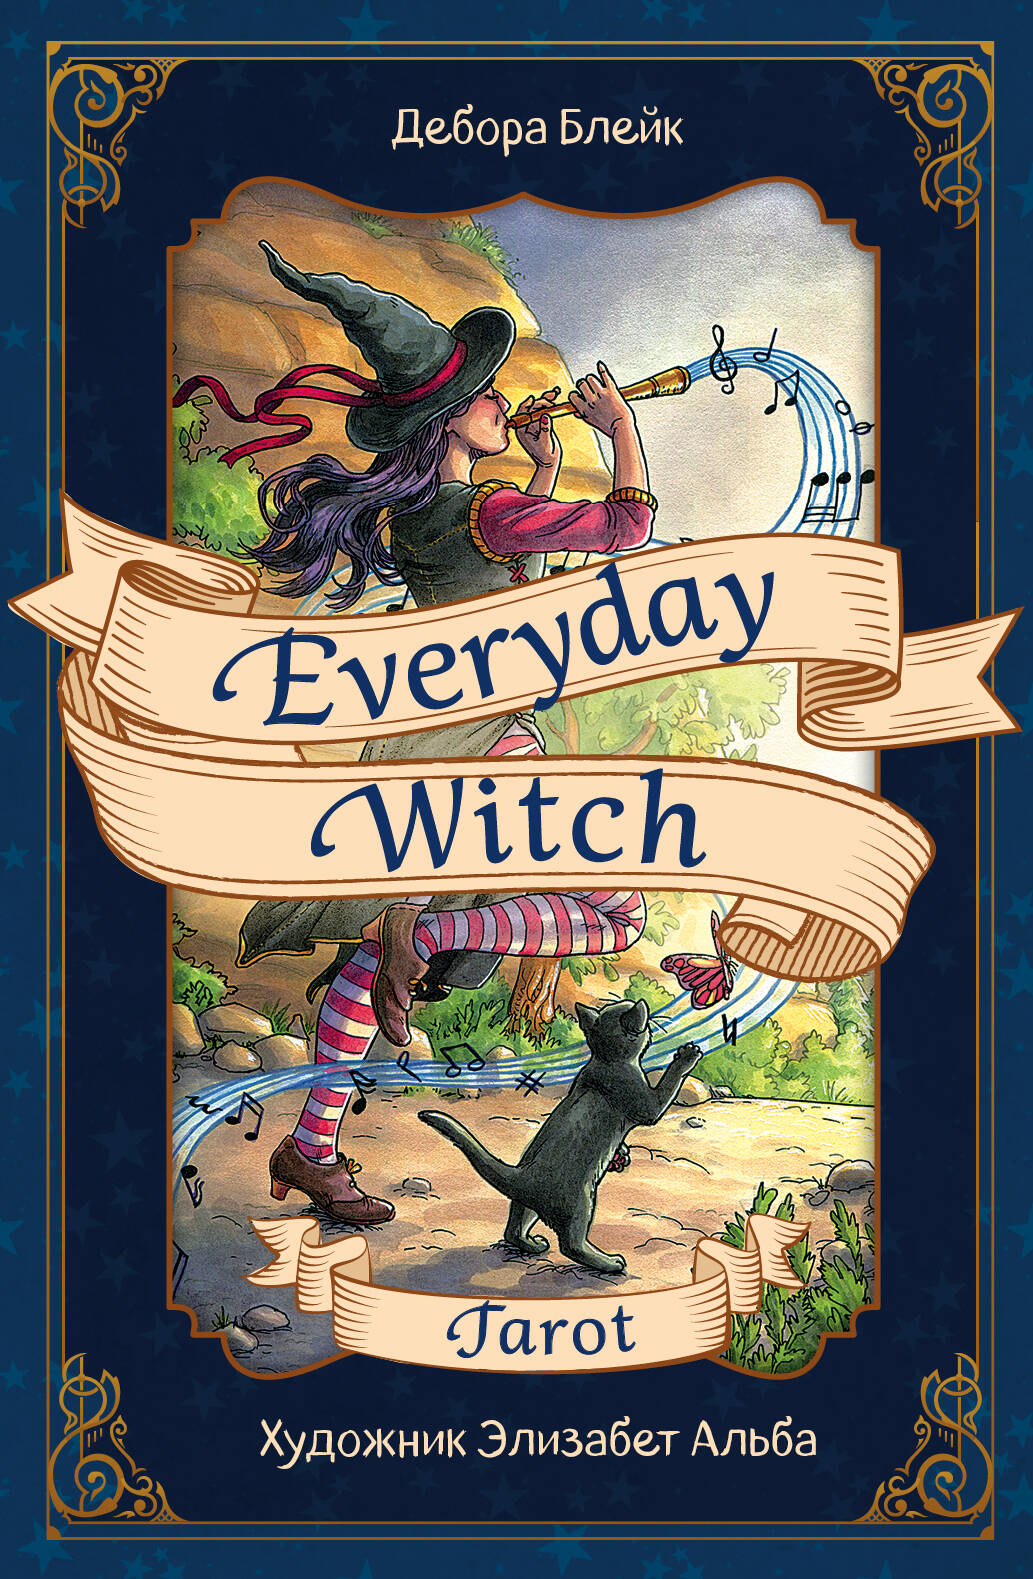 повседневное таро ведьмы everyday witch tarot 78 карт Блейк Дебора Everyday Witch Tarot / Повседневное Таро ведьмы 78 карт и руководство